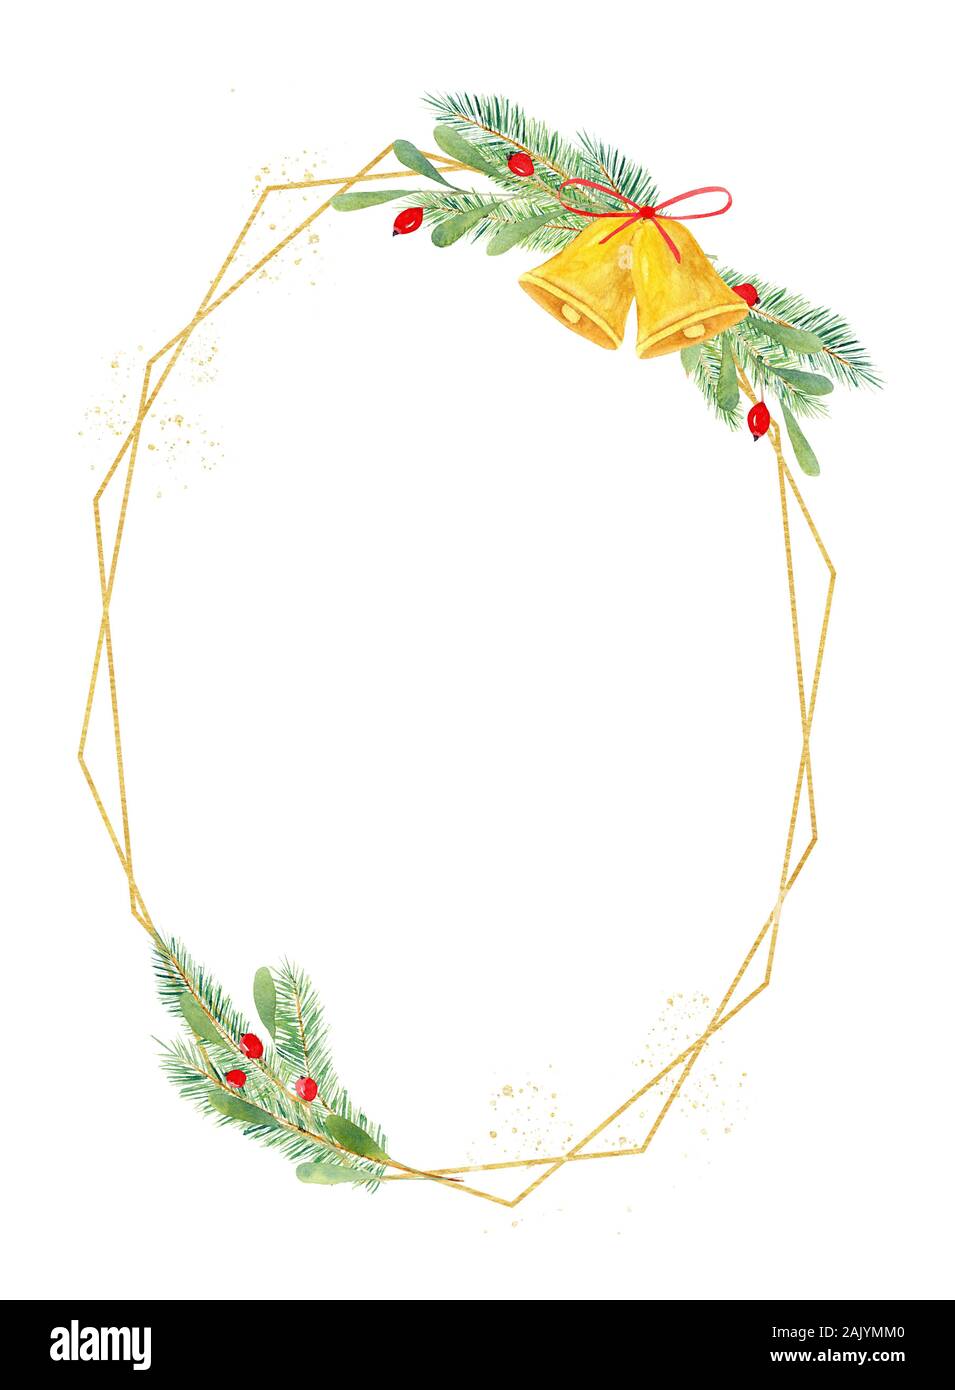 Festliche ovale Form rahmen Hand gezeichnet Aquarell Abbildung. X-mas Komposition mit Ilex, Holly, Mistel mit Klingel und rote Schleife. Weihnachten bor Stockfoto